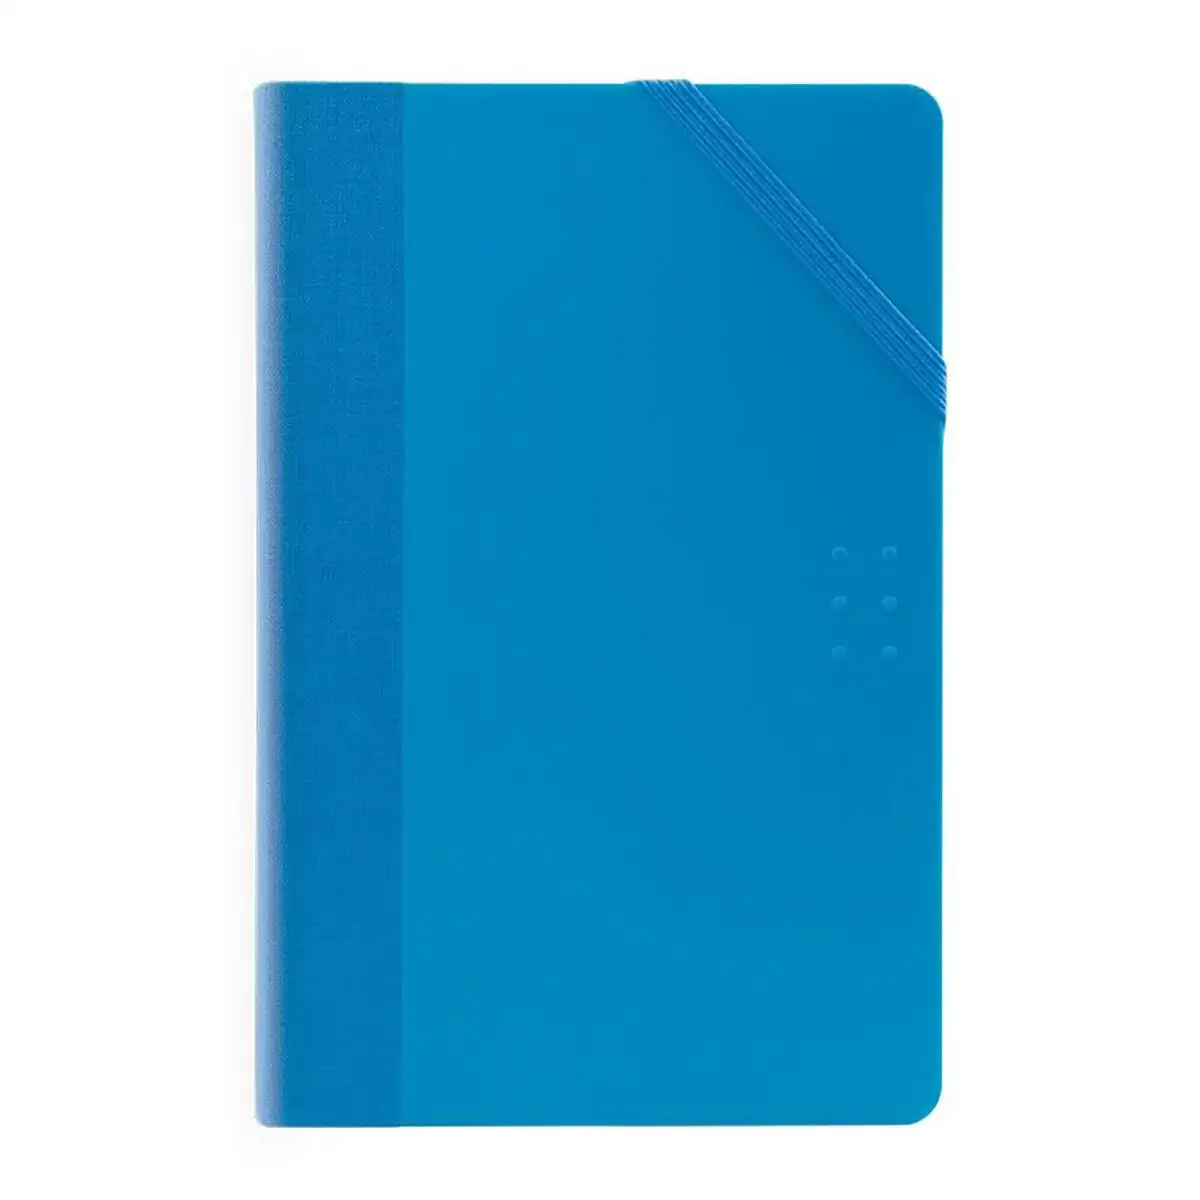 Carnet milan paper book 21 x 14 6 x 1 6 cm bleu 208 feuilles_8760. DIAYTAR SENEGAL - Votre Portail Vers l'Exclusivité. Explorez notre boutique en ligne pour trouver des produits uniques et exclusifs, conçus pour les amateurs de qualité.